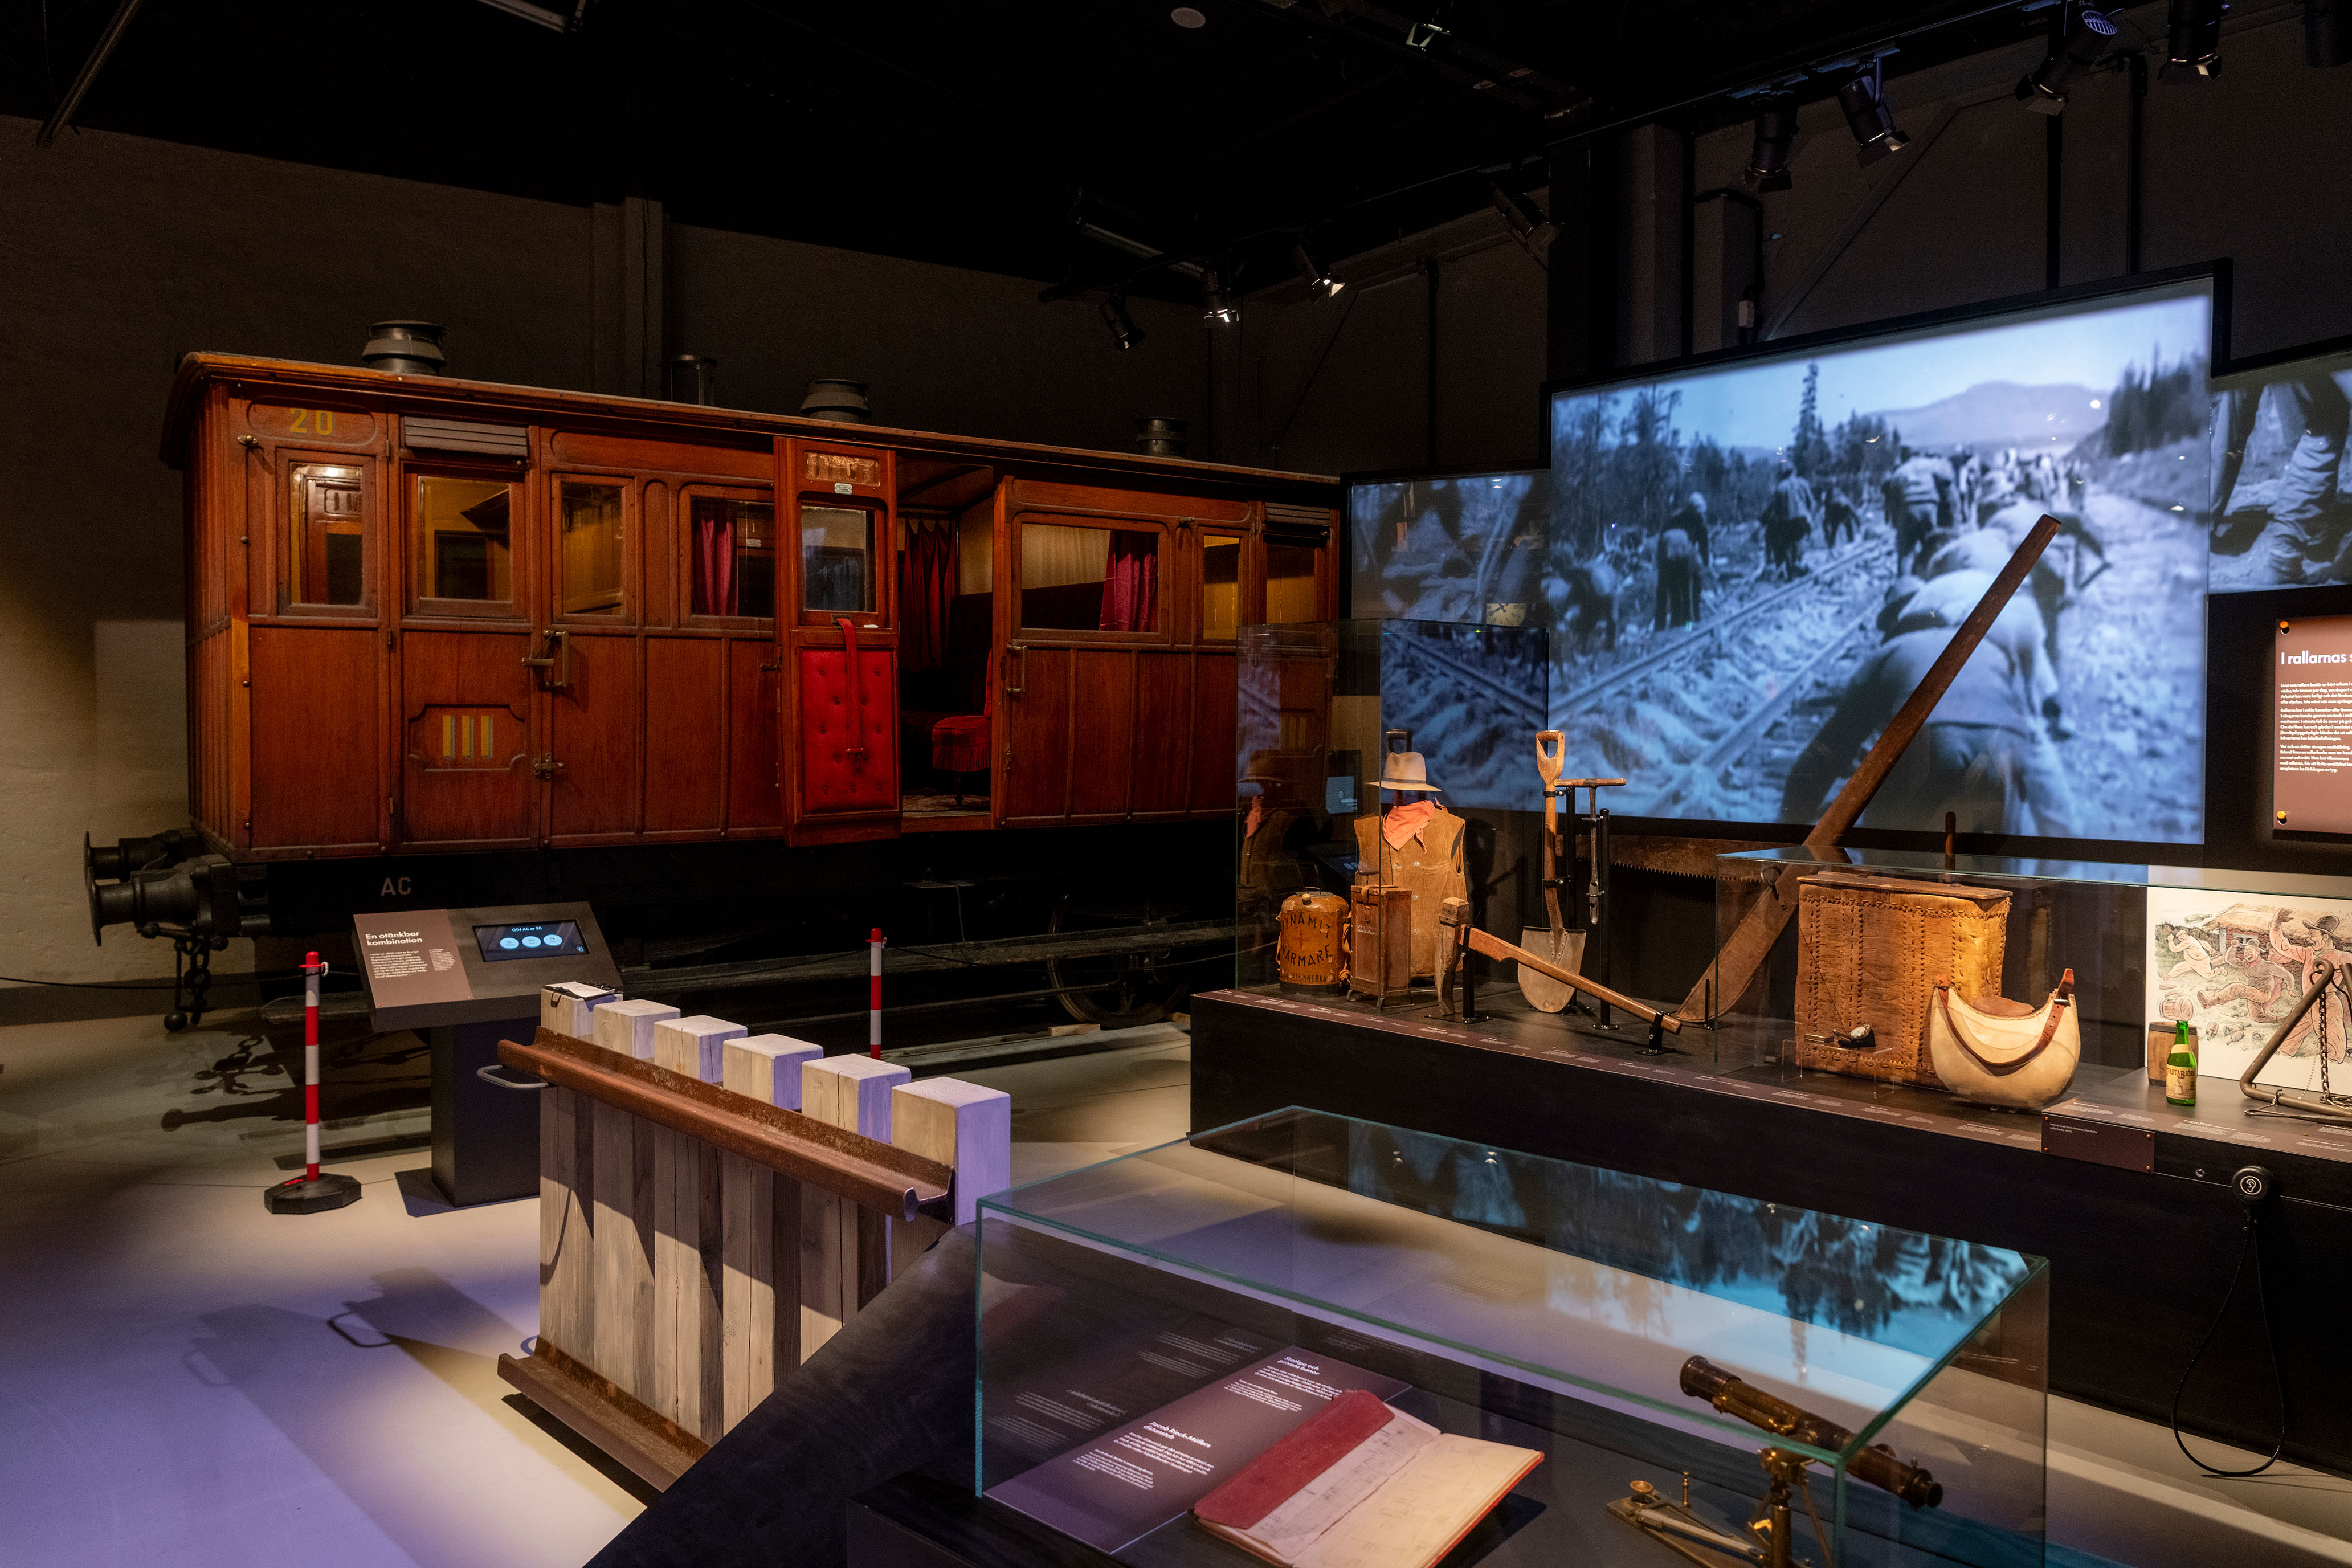 En förstaklassvagn från 1900-talet, en montern och en skärm med en svartvit film står i en utställninghall